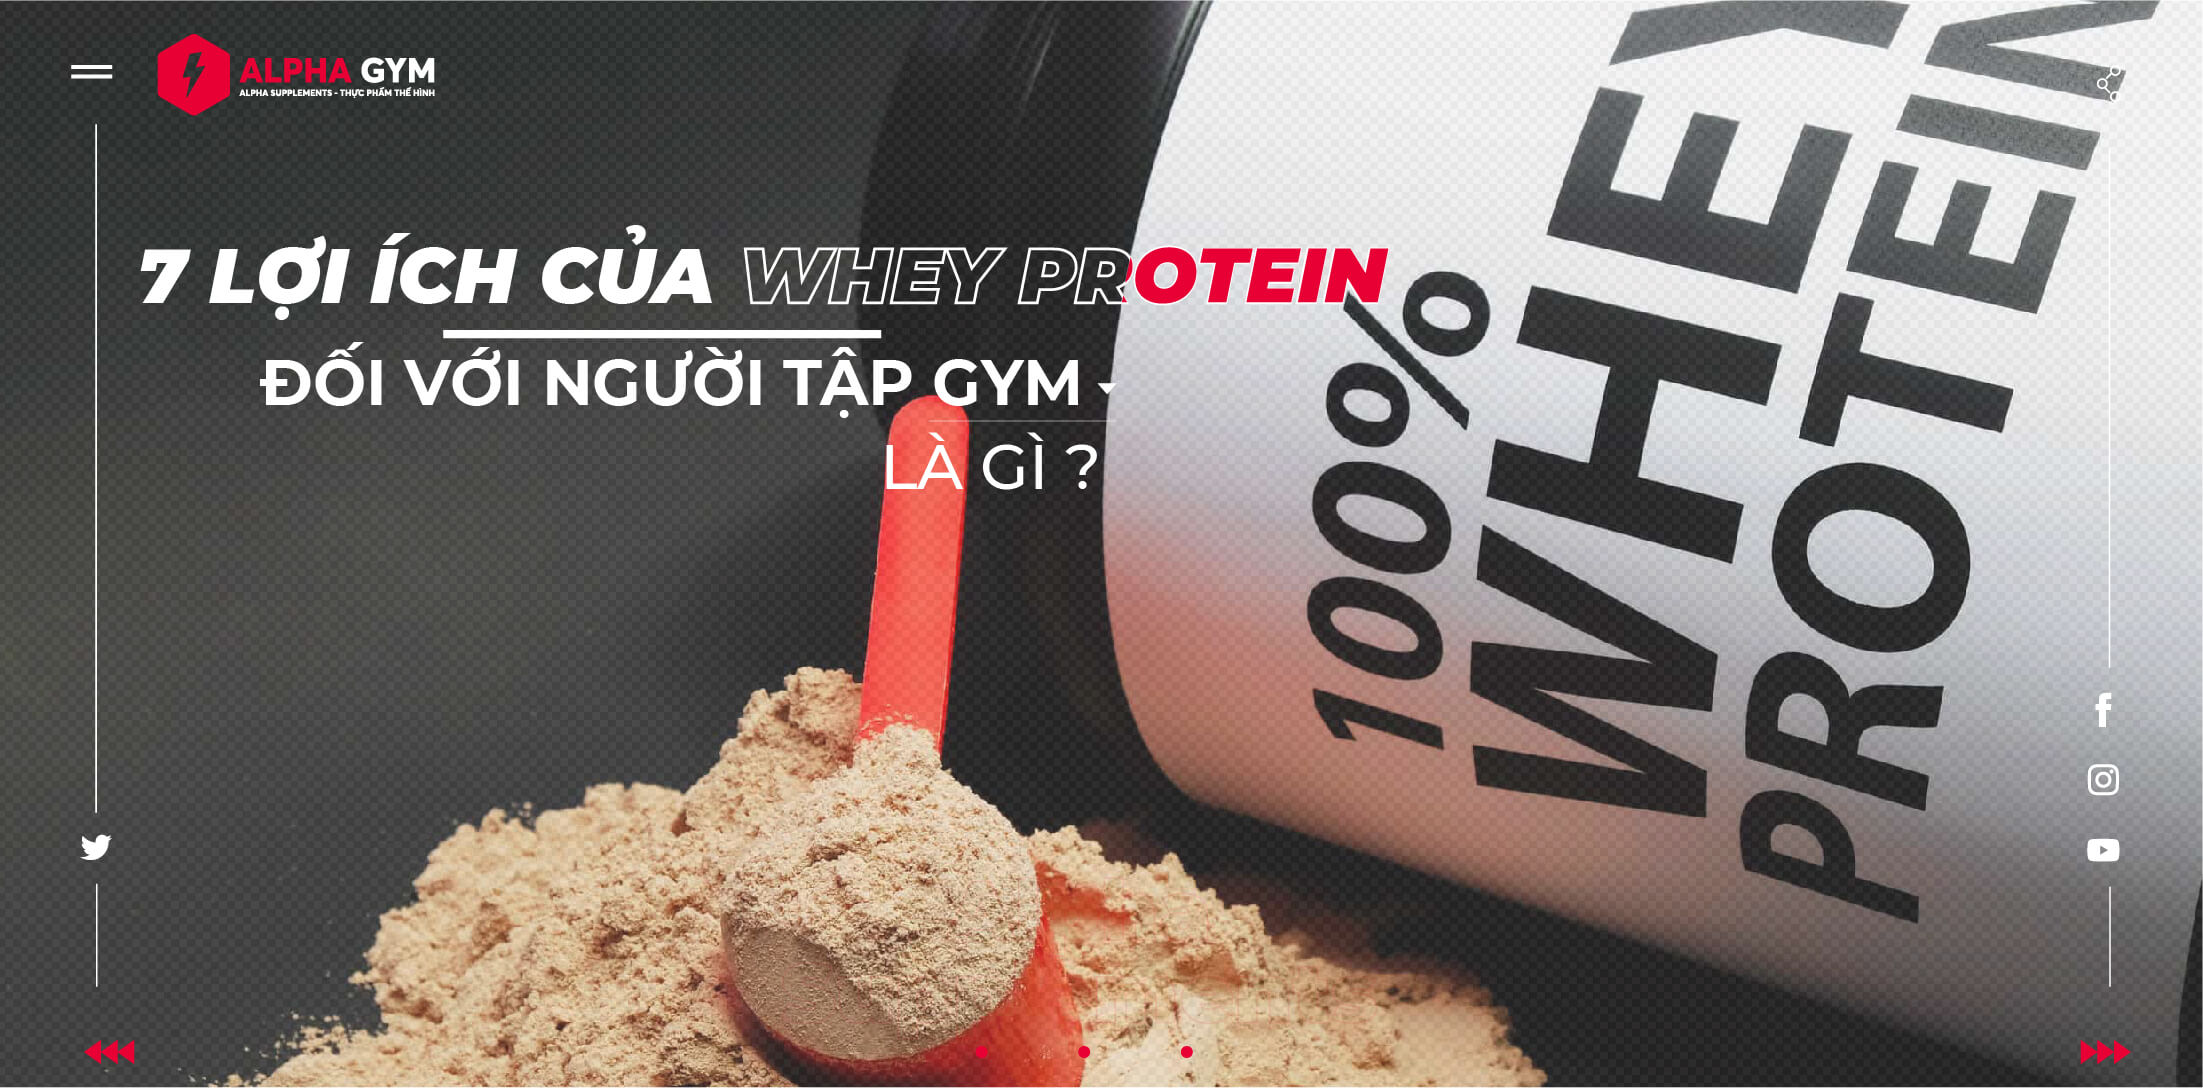 7 lợi ích của Whey Protein đối với người tập gym là gì ?